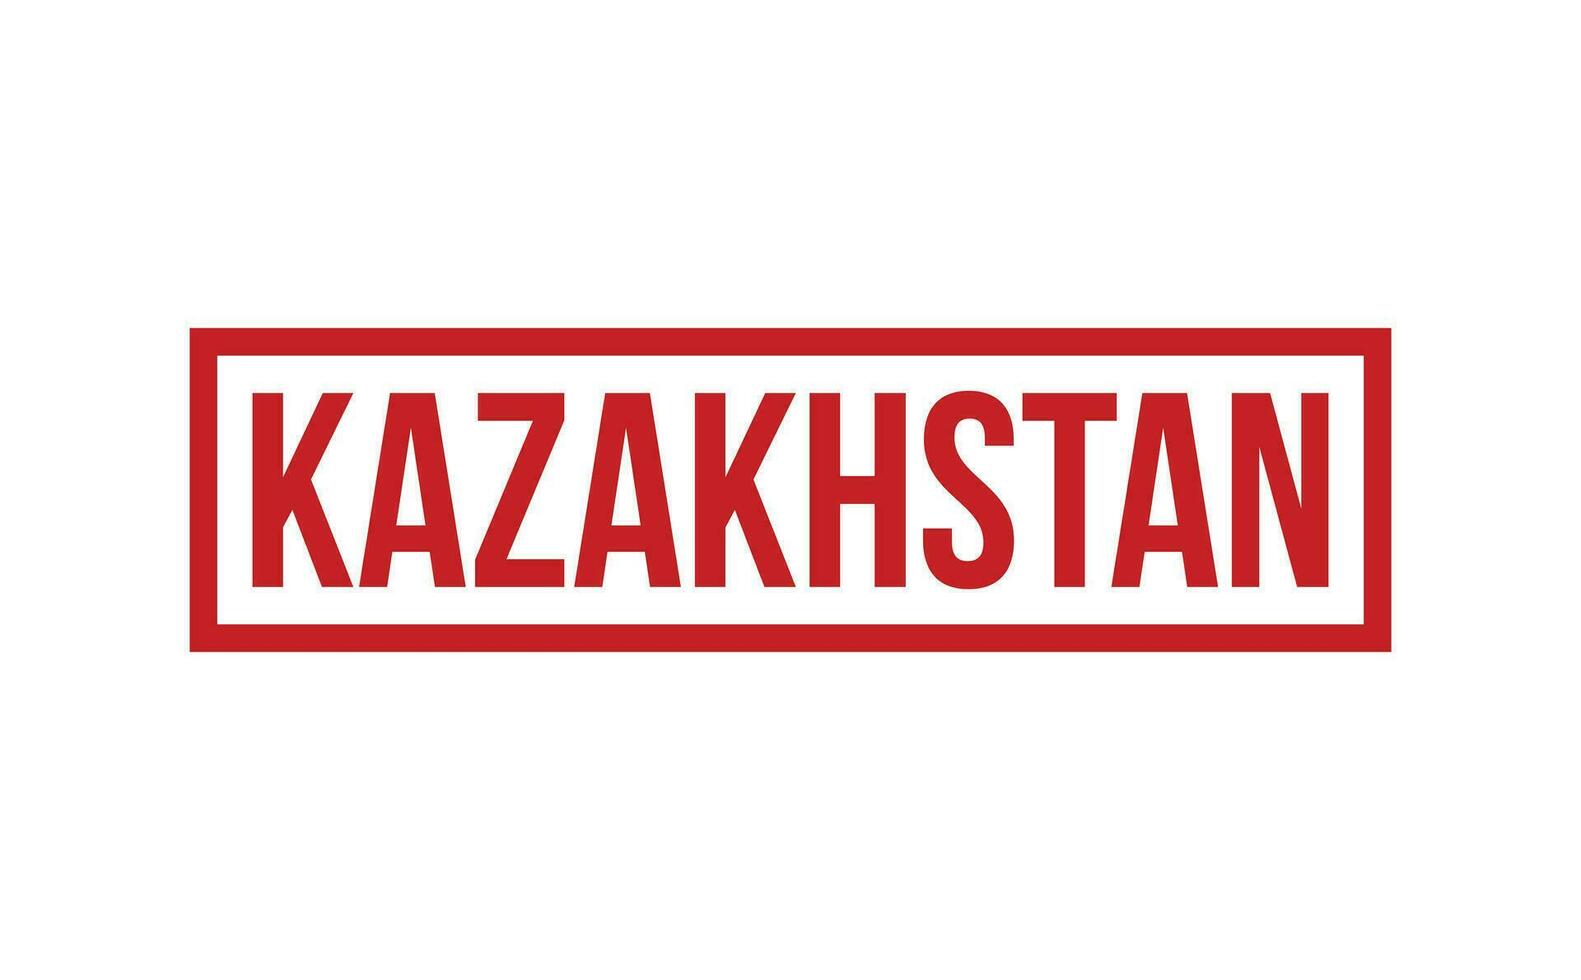 Kasachstan Gummi Briefmarke Siegel Vektor